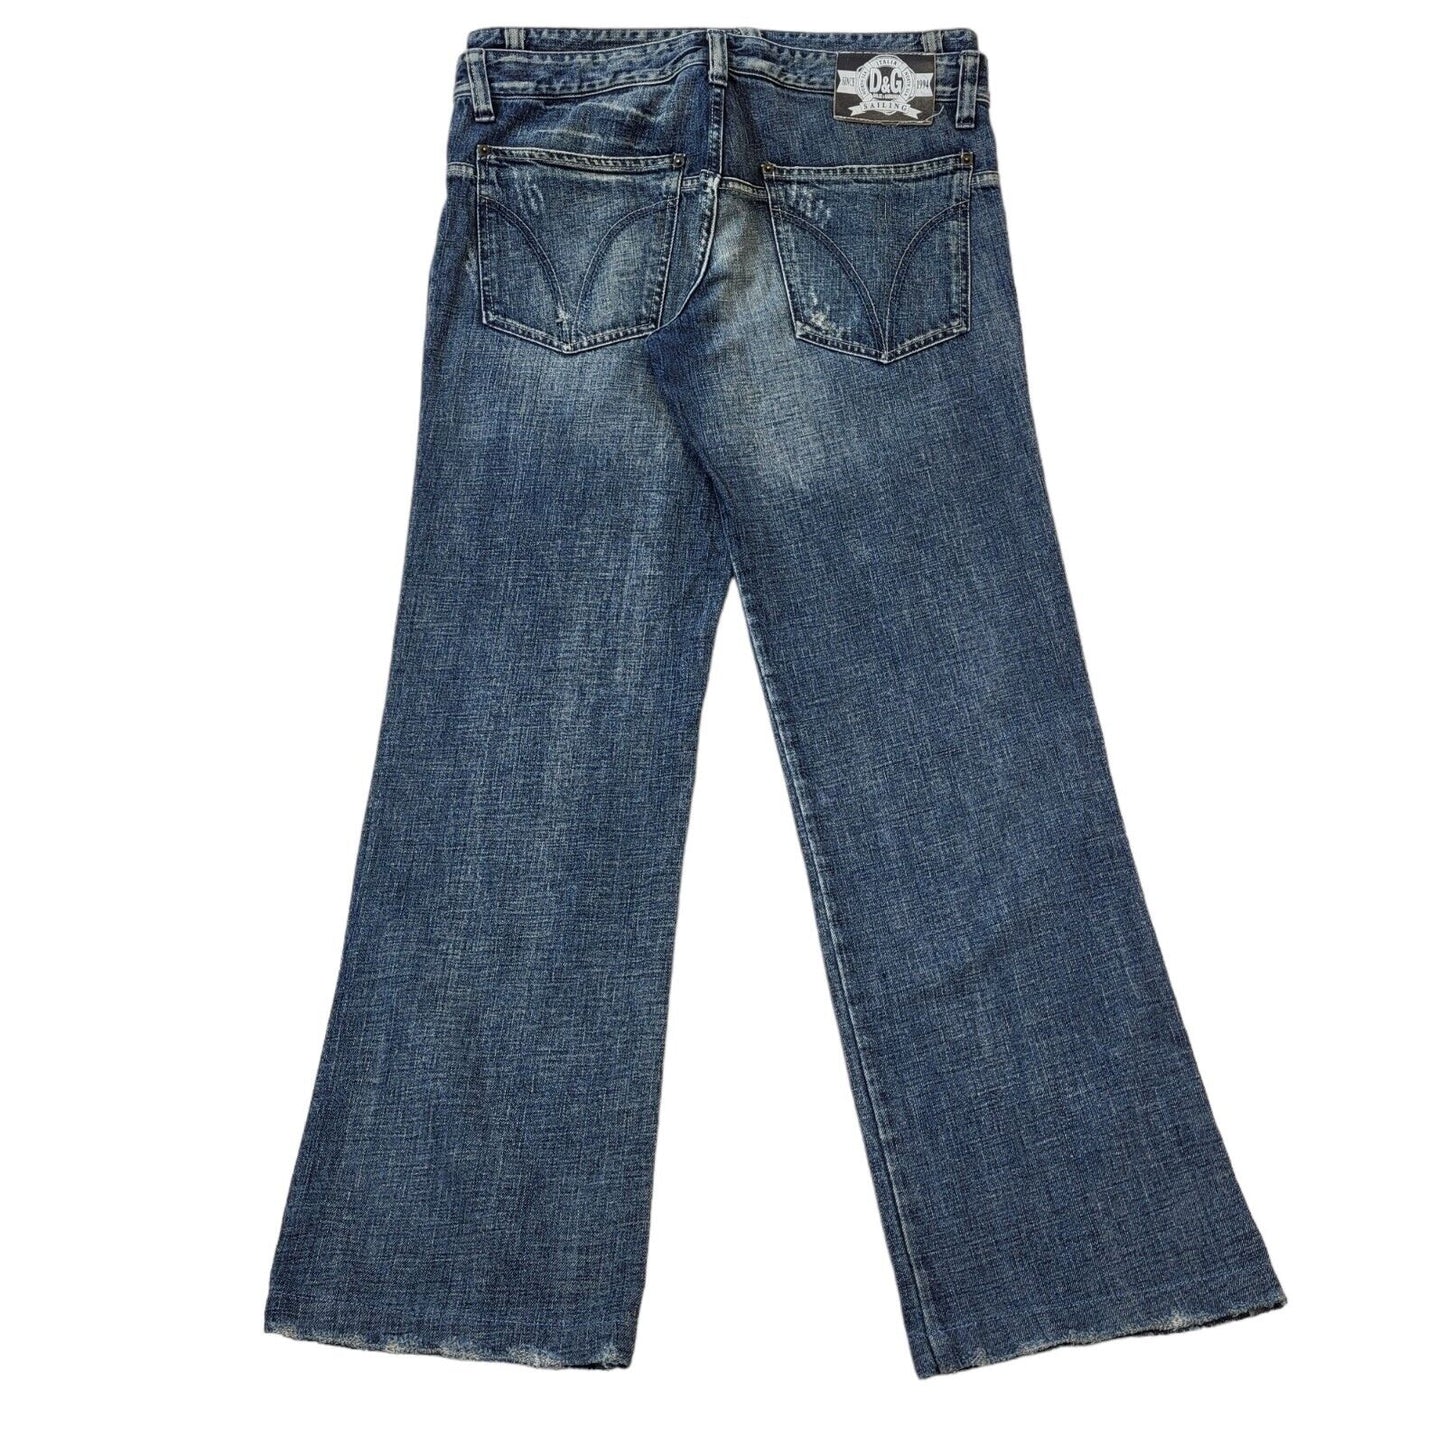 D&G Jeans (L)